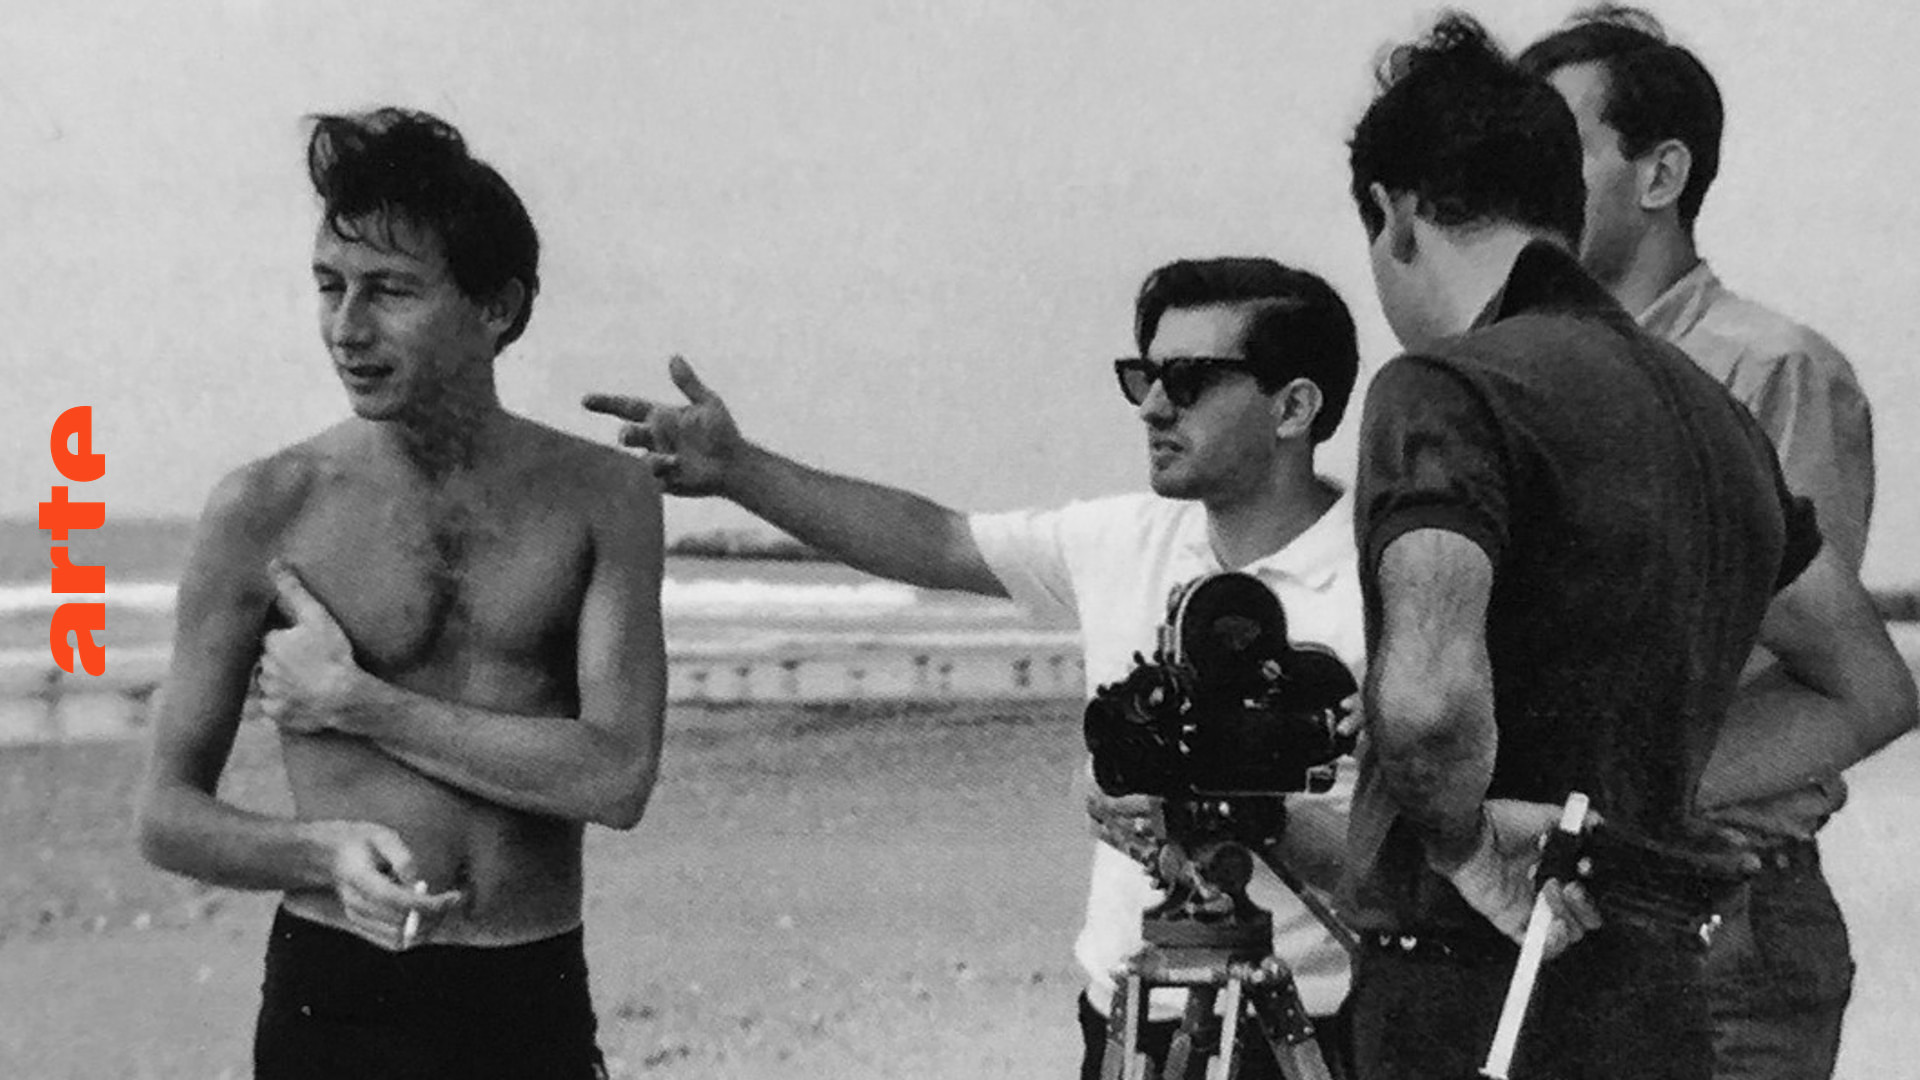 Blow up - Kennen Sie die Kurzfilme von Martin Scorsese?